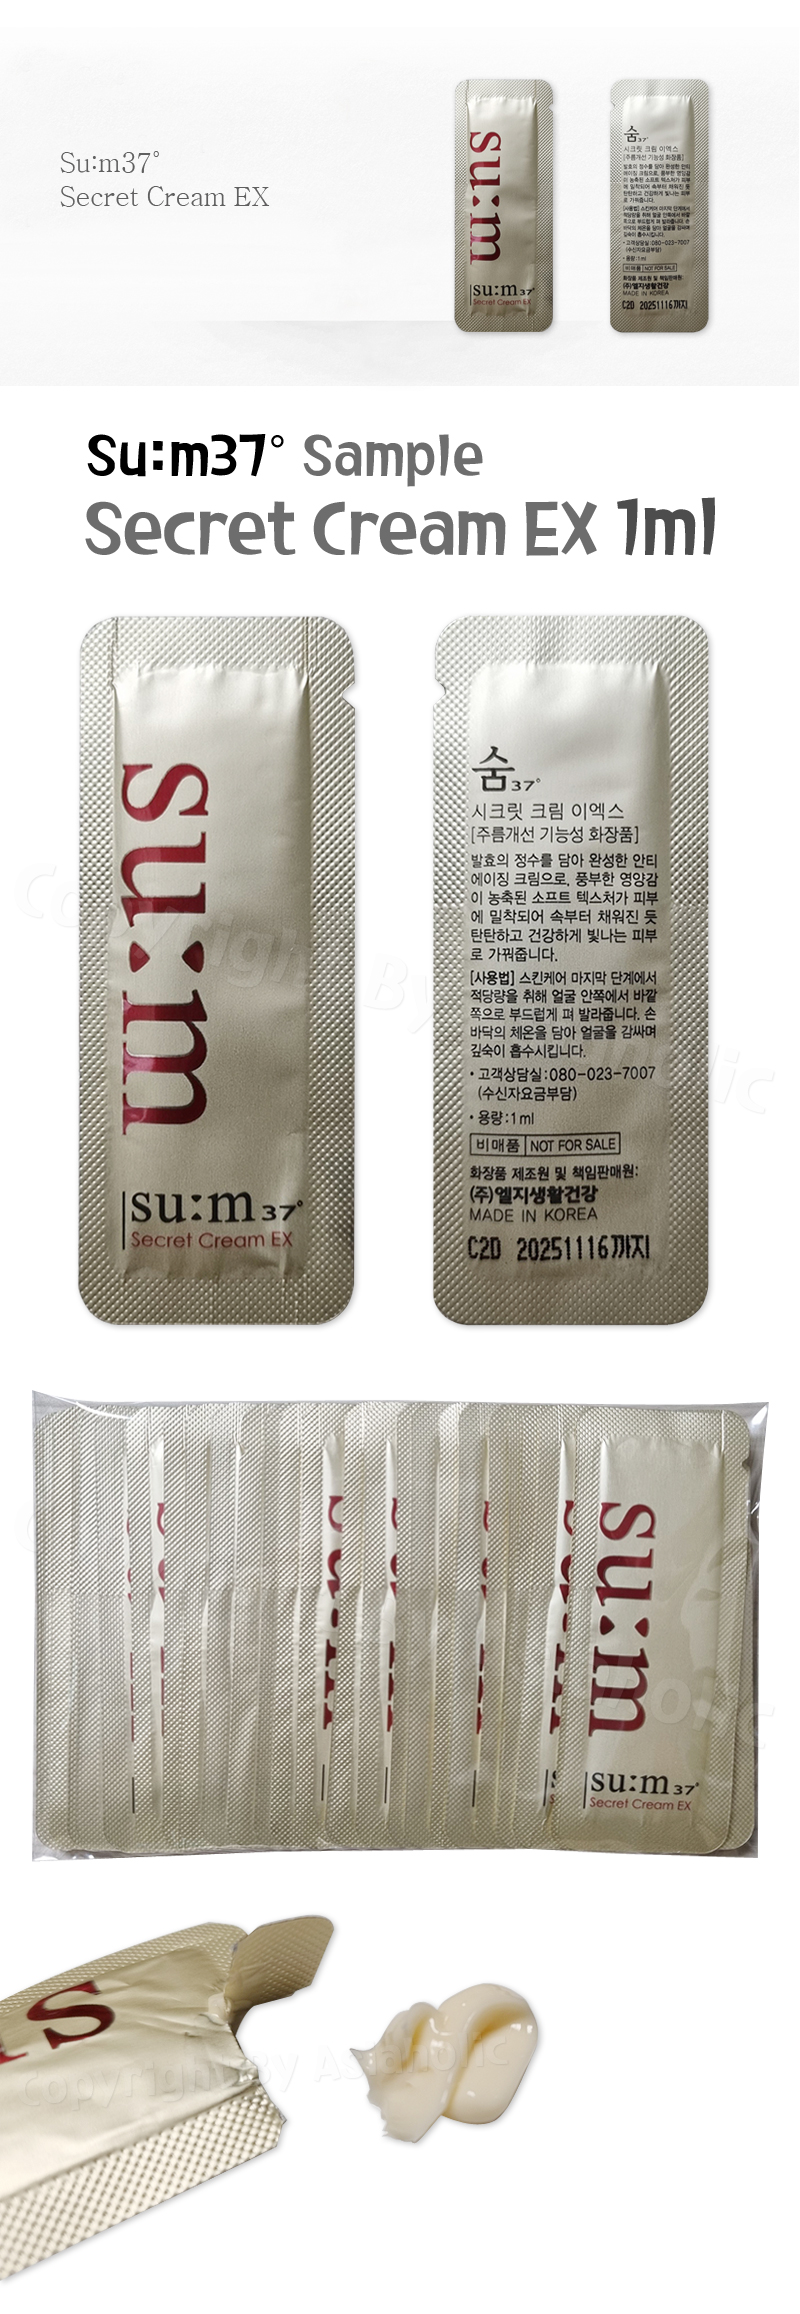 SU:M37 Secret Cream EX 1ml x 10pcs (10ml) Sample Sum37 Newest Version